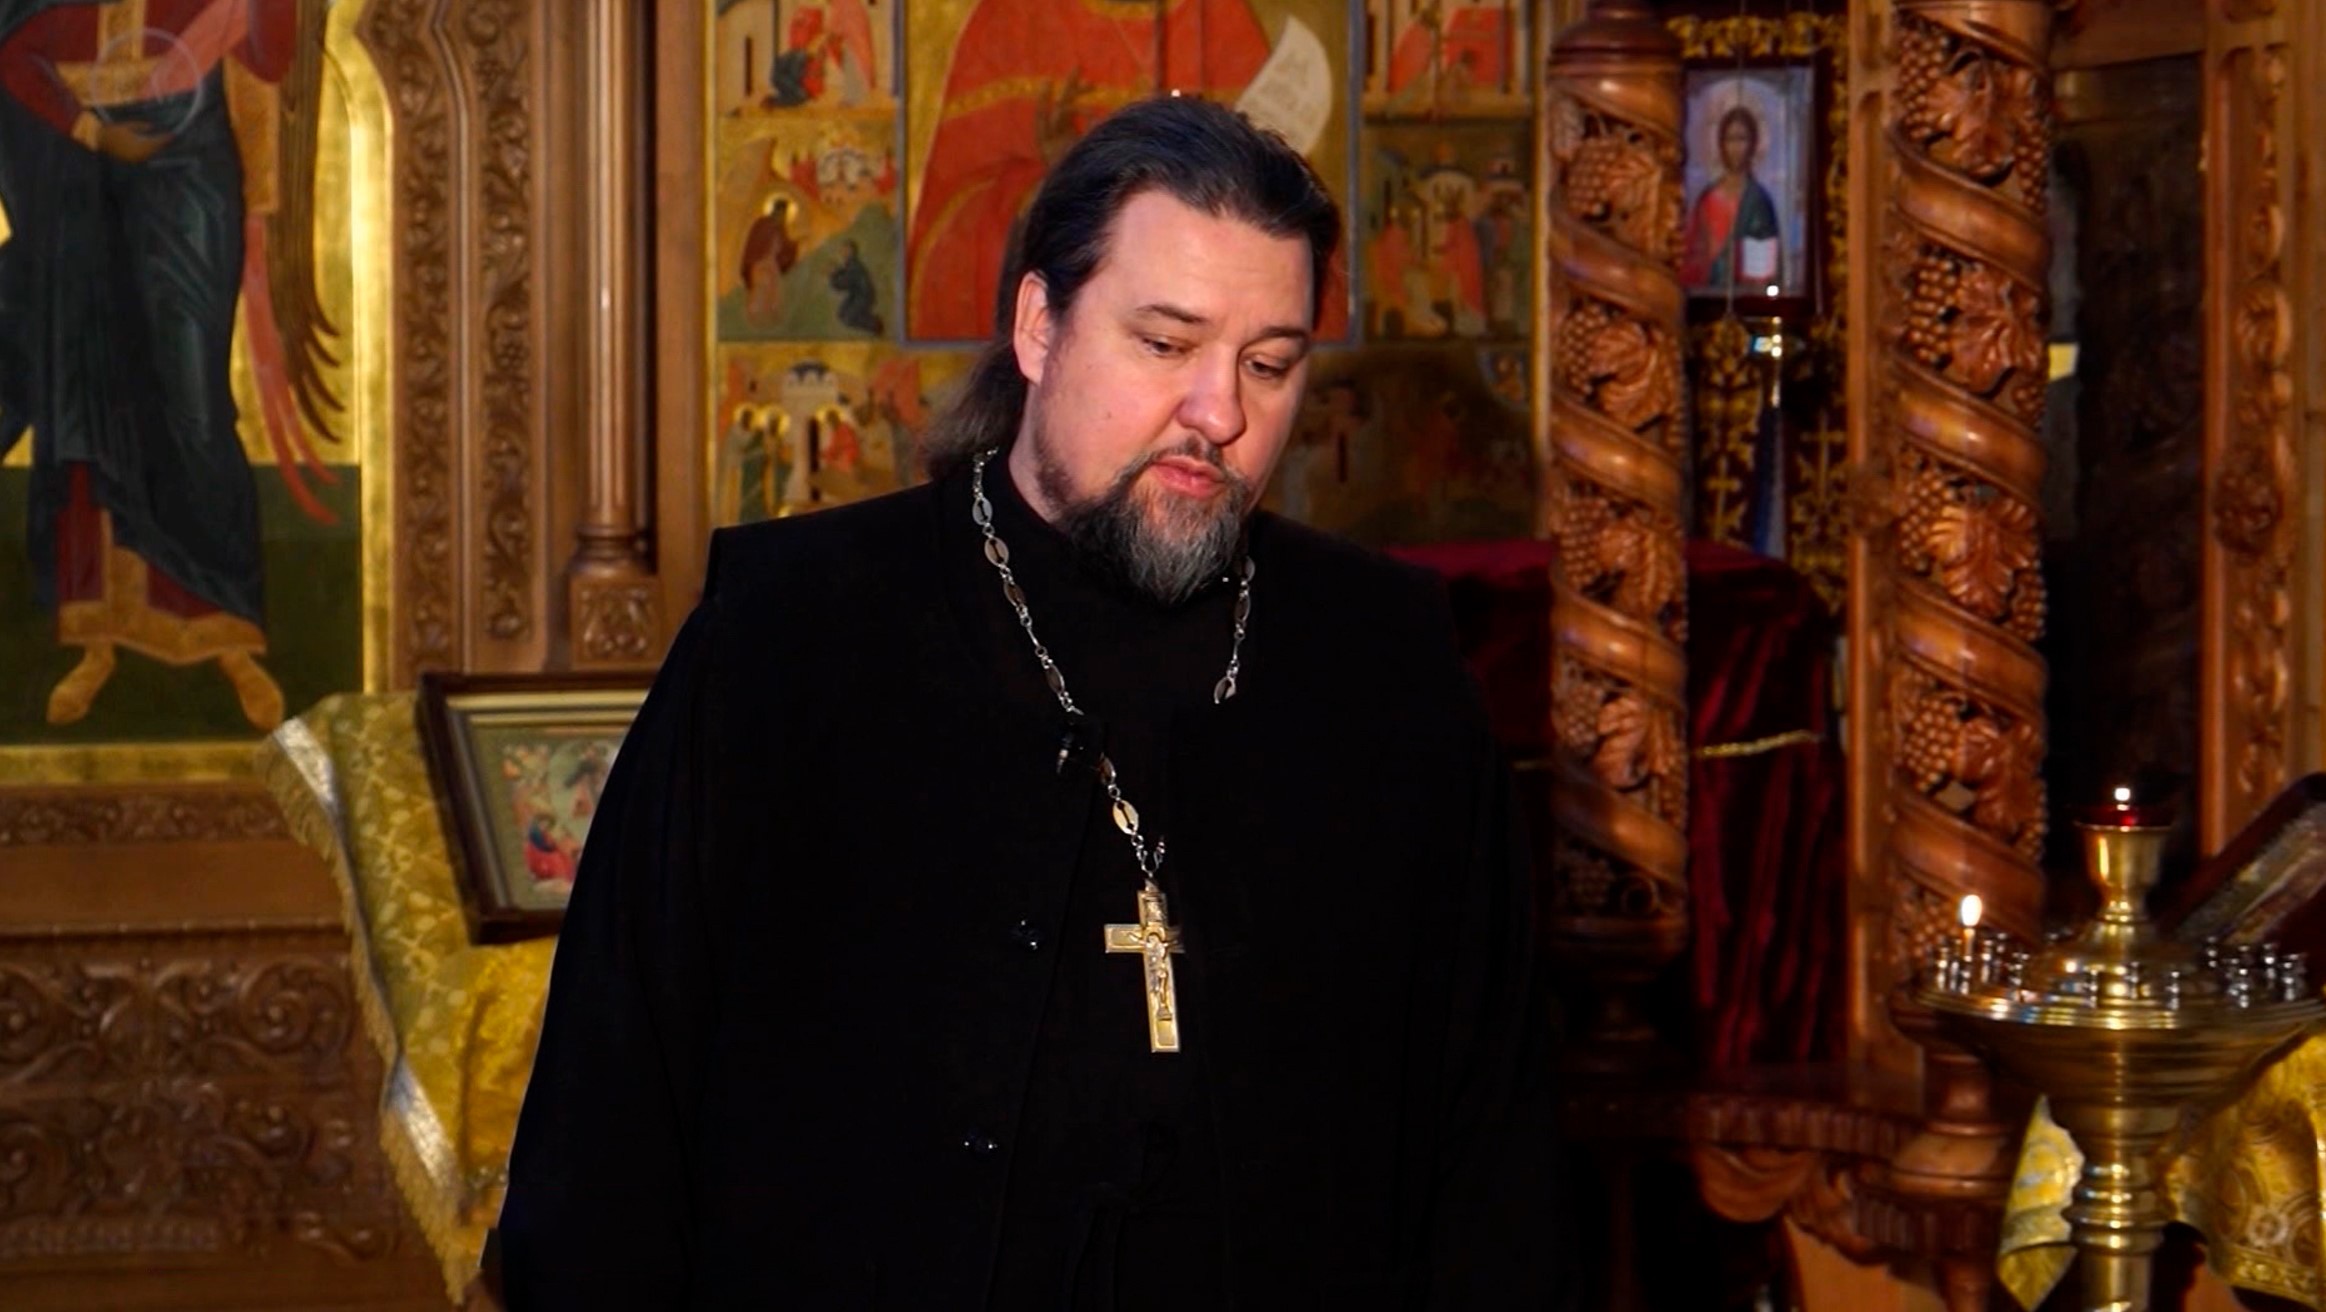 Молитва "Символ веры" - догмат православия